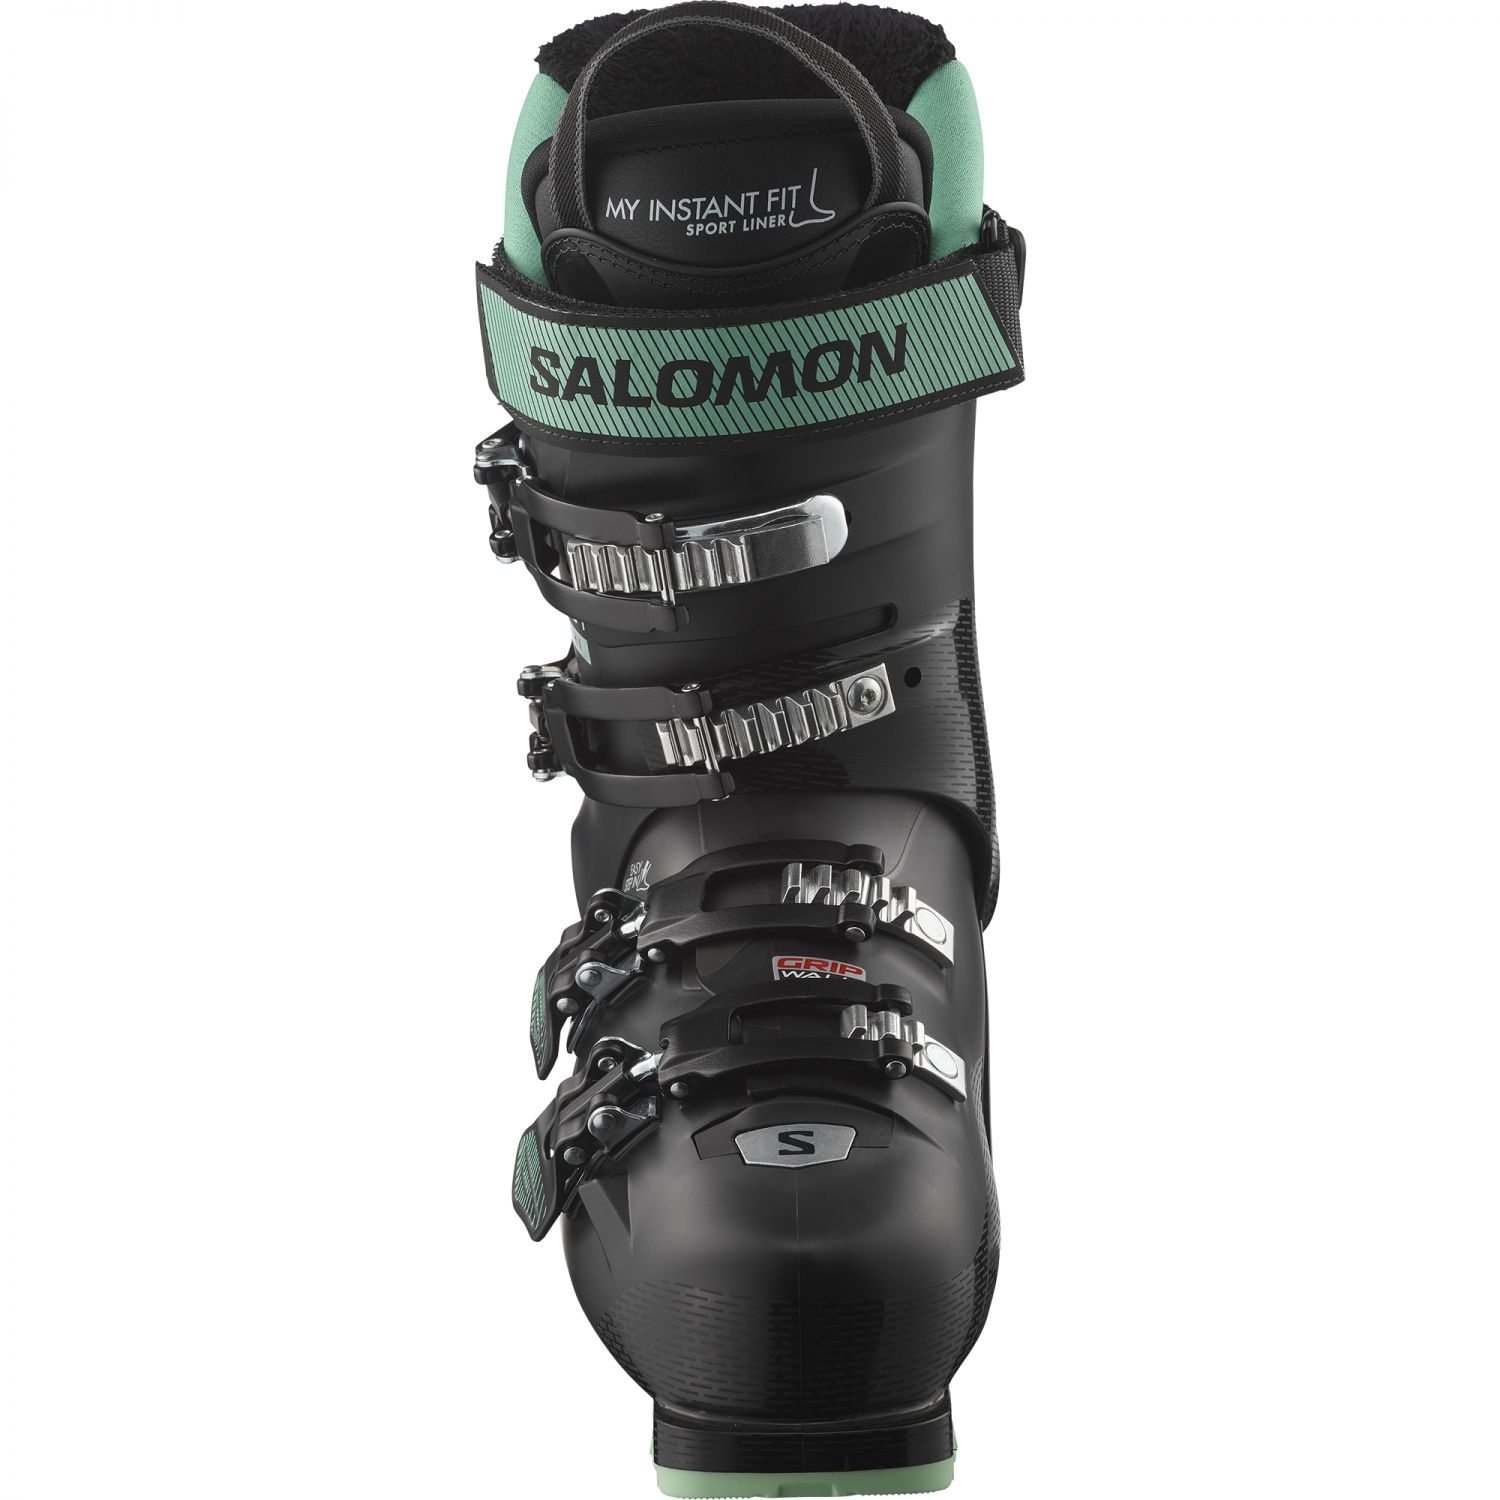 Salomon Select HV 80 W GW, chaussures de ski, femmes, noir/vert/blanc